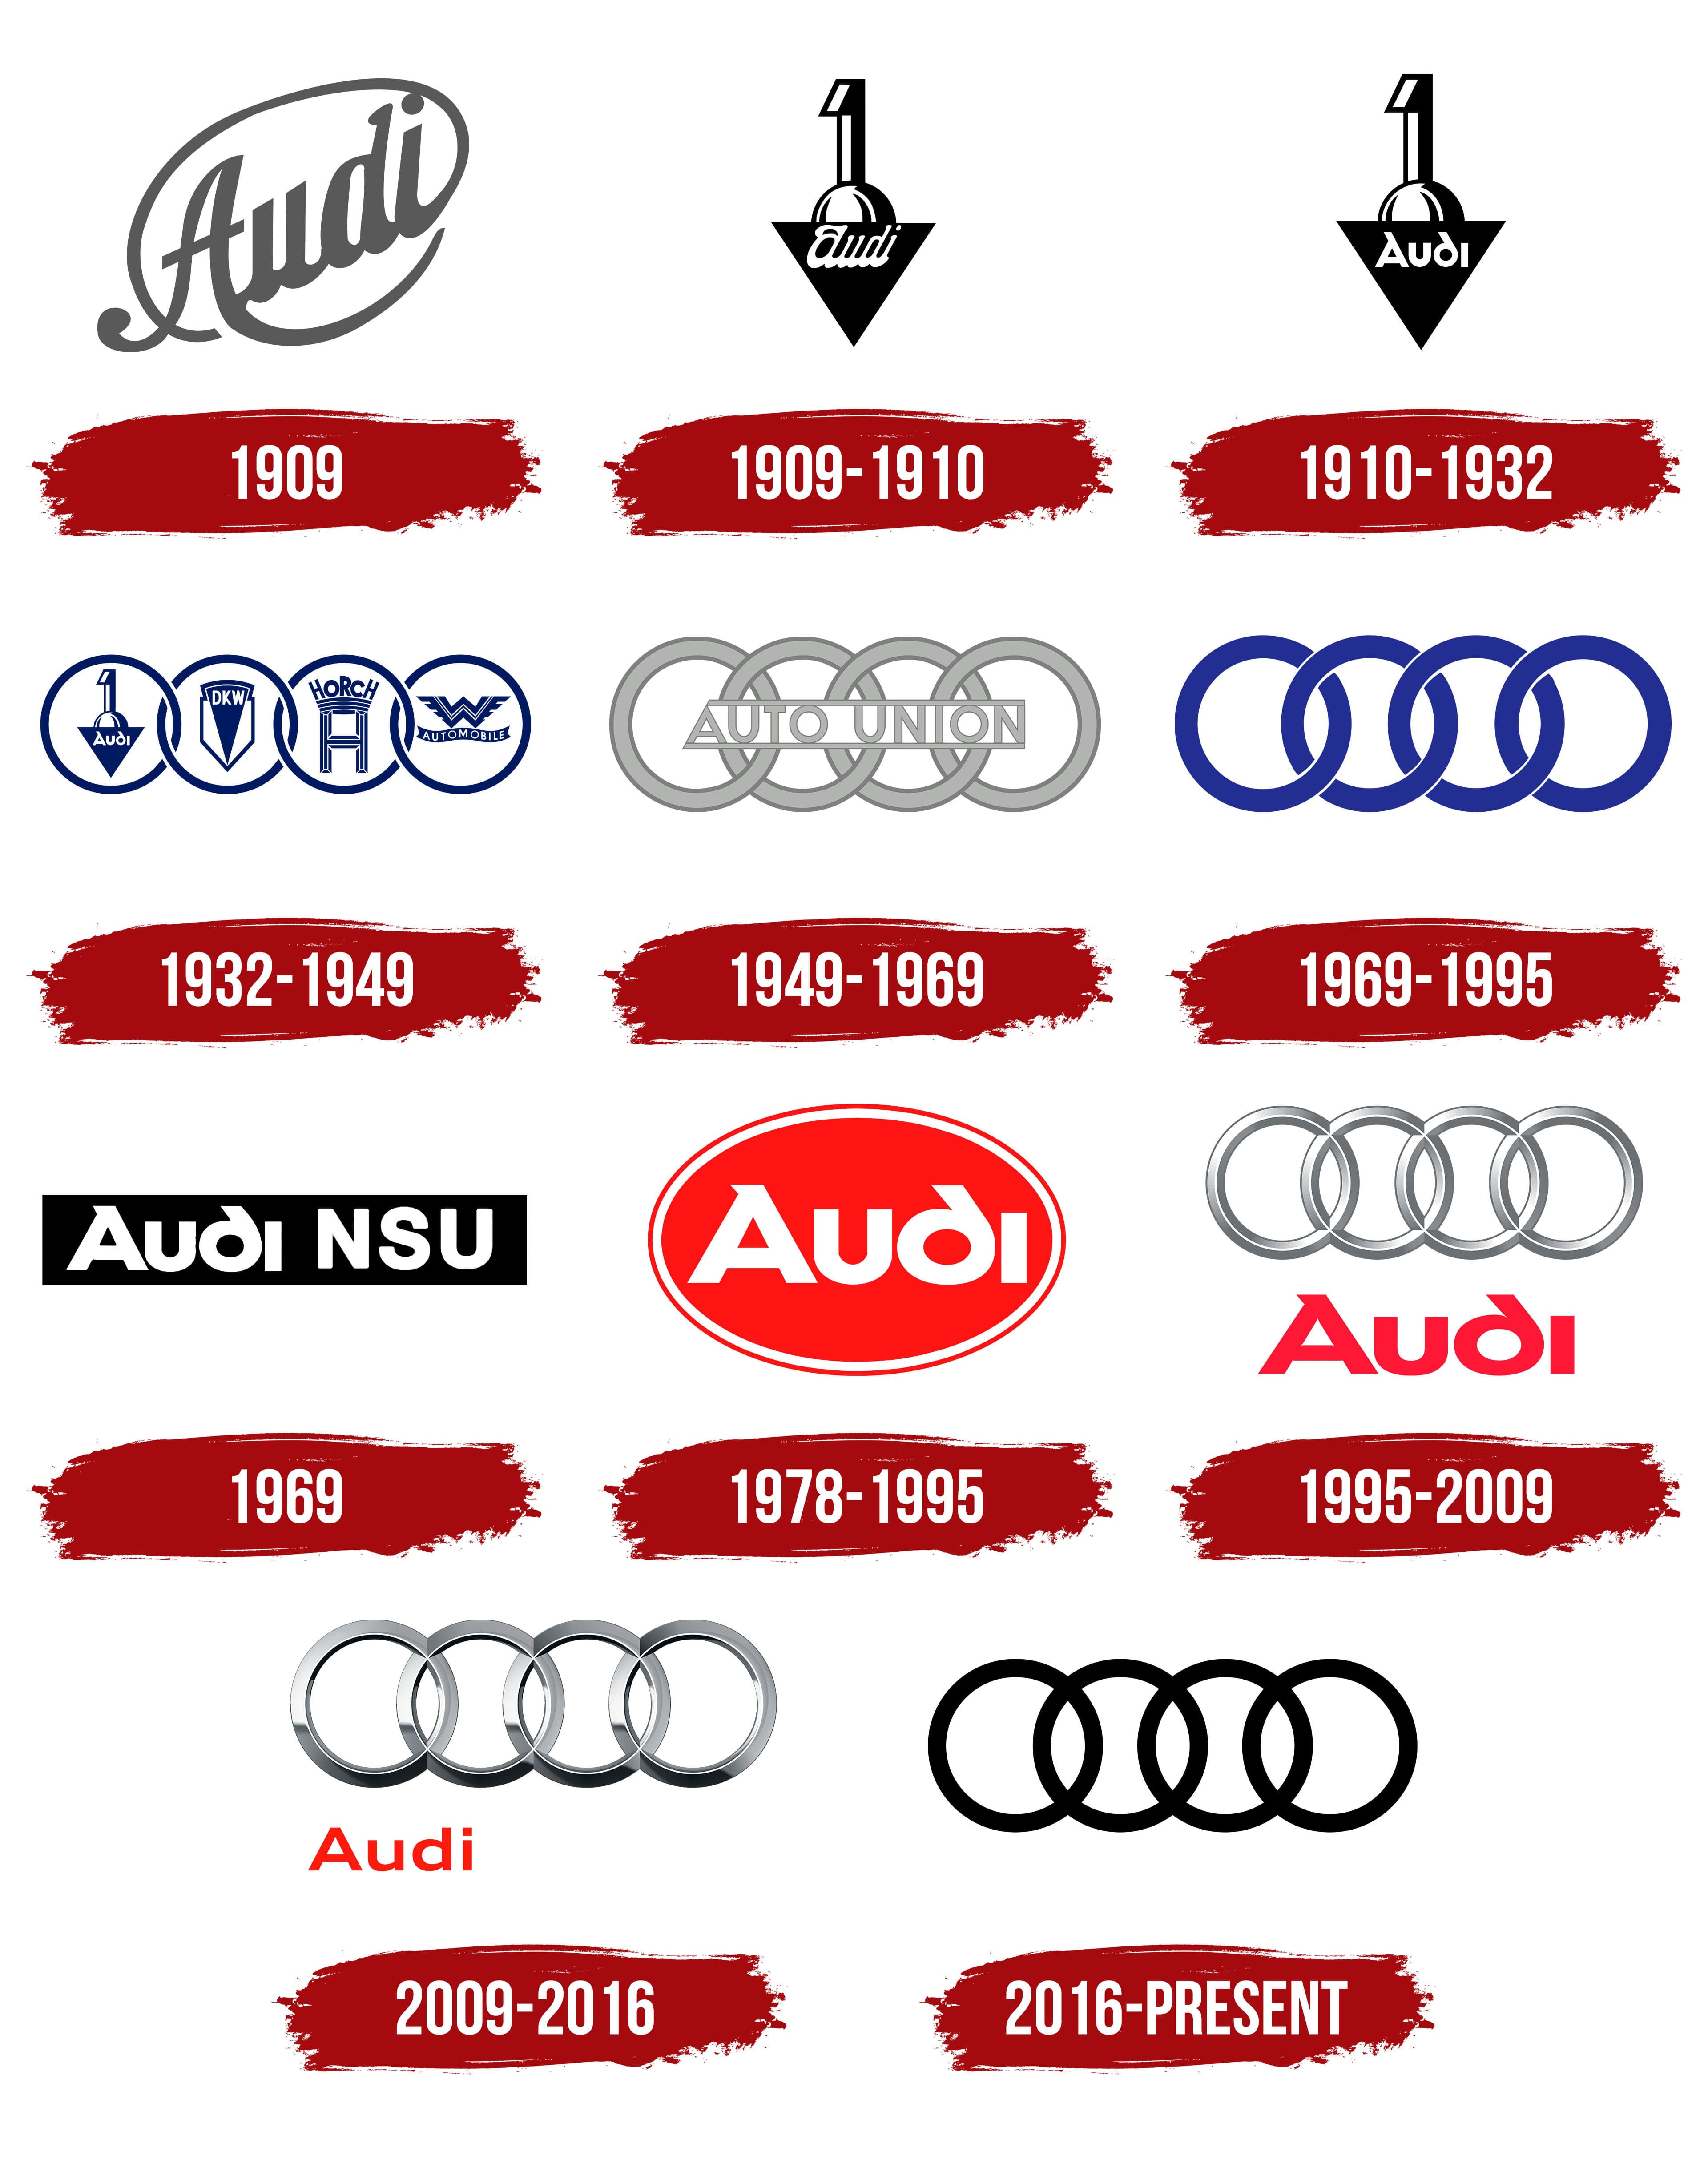 https://logos-world.net/wp-content/uploads/2021/05/Audi-Logo-History.jpg